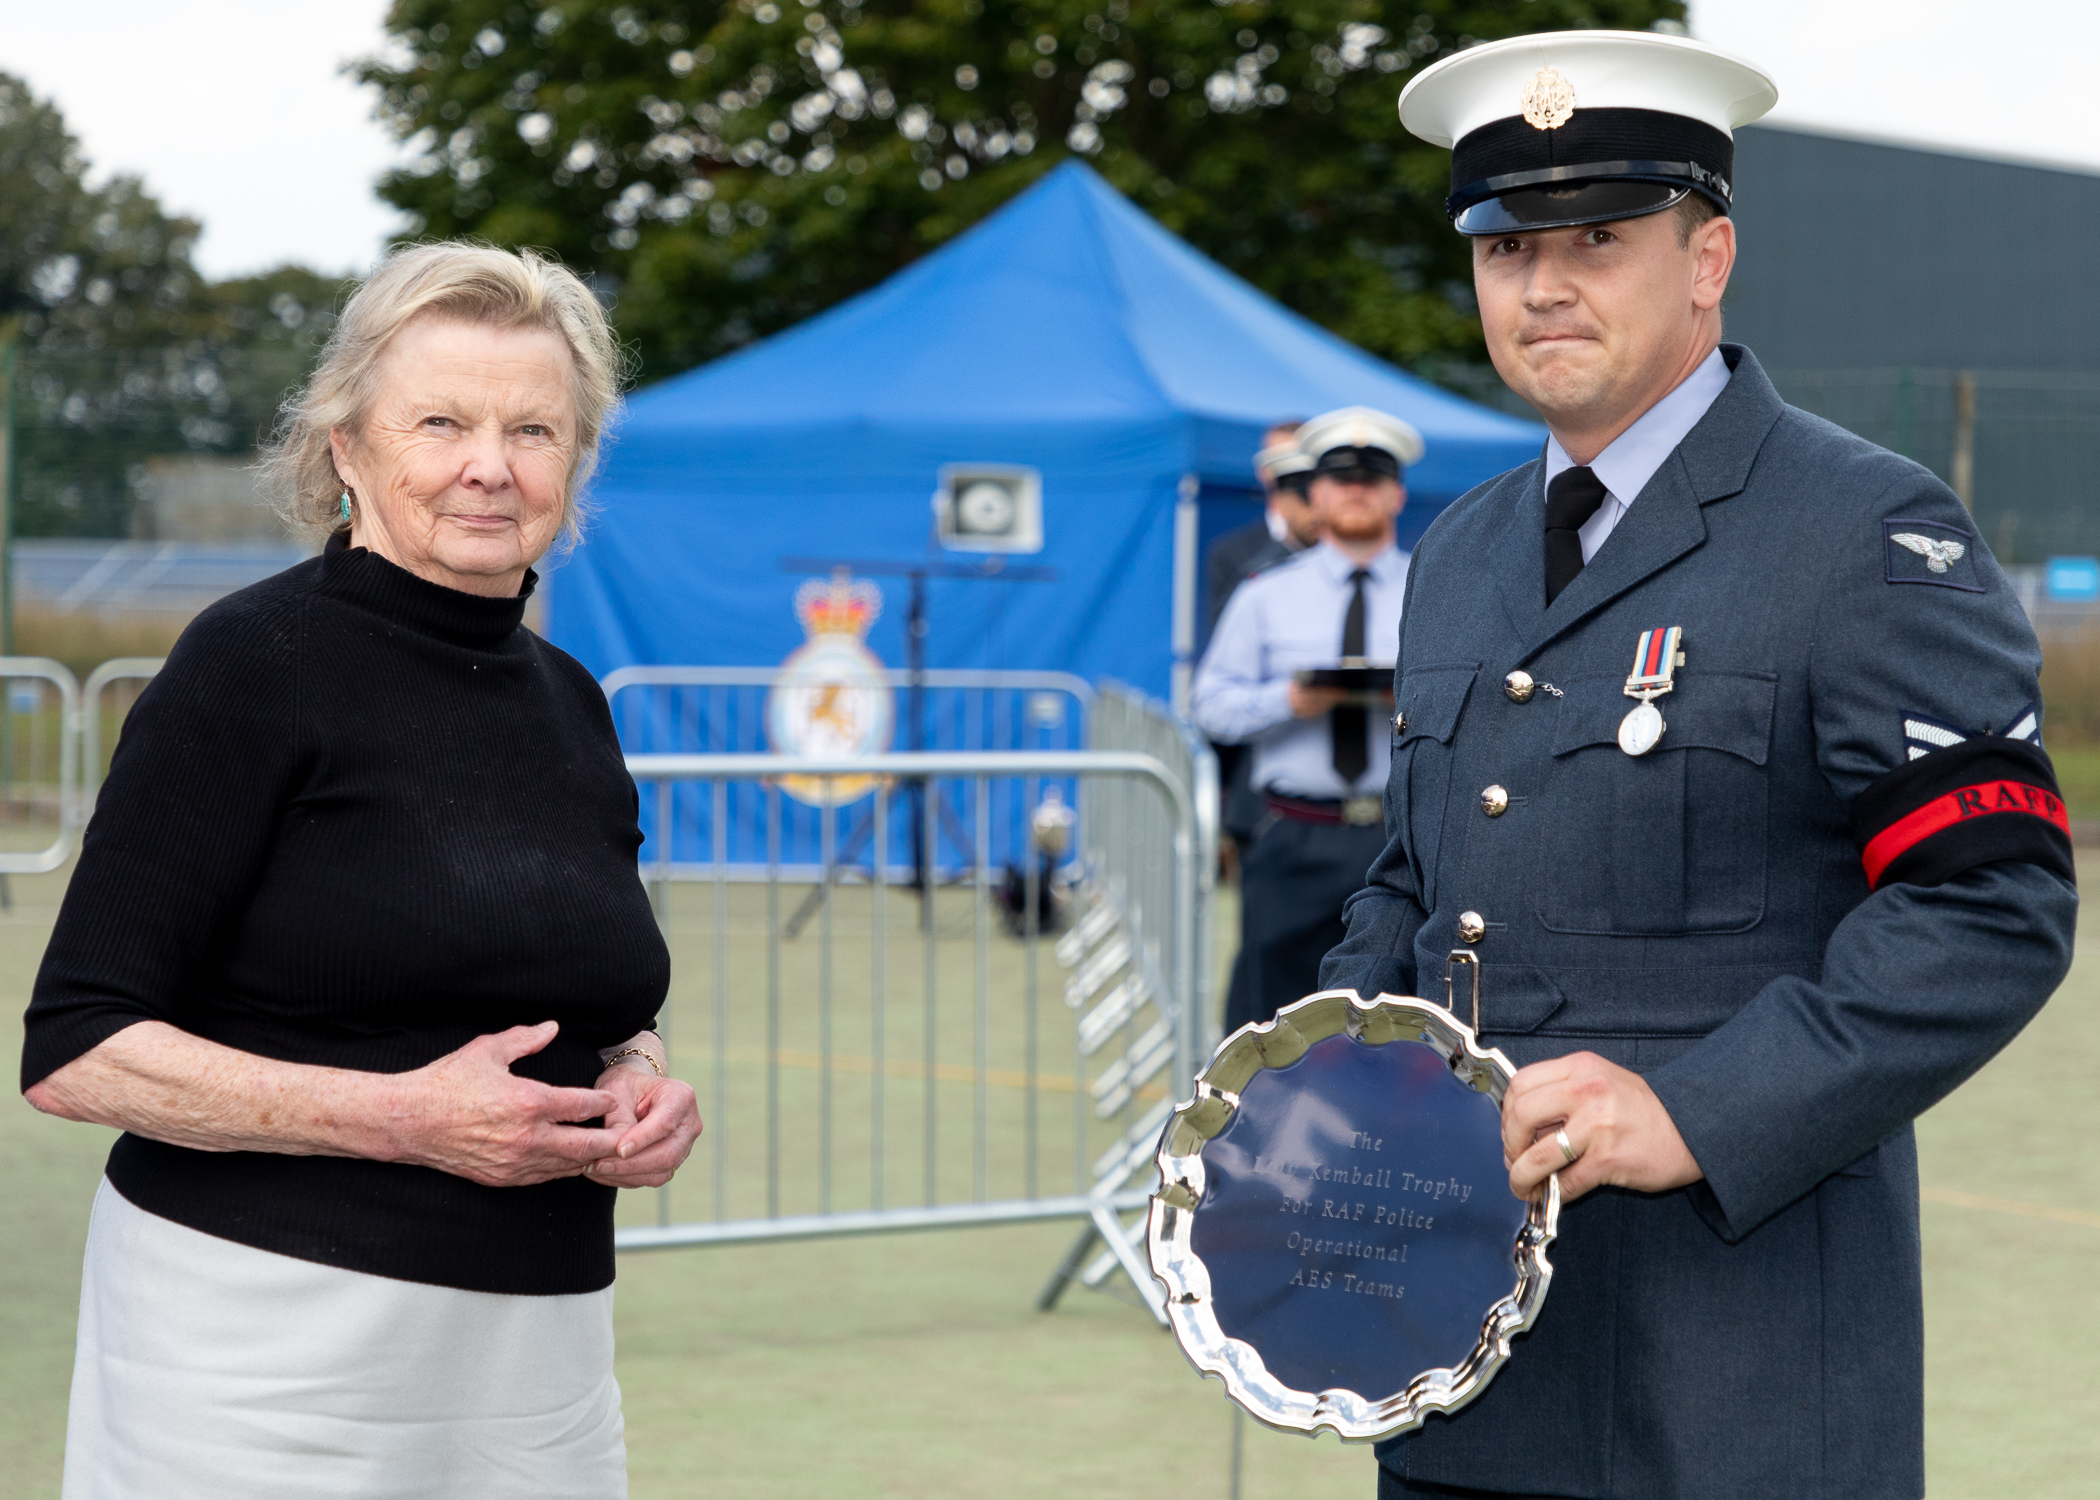 RAF Police Handler holds trophy. 